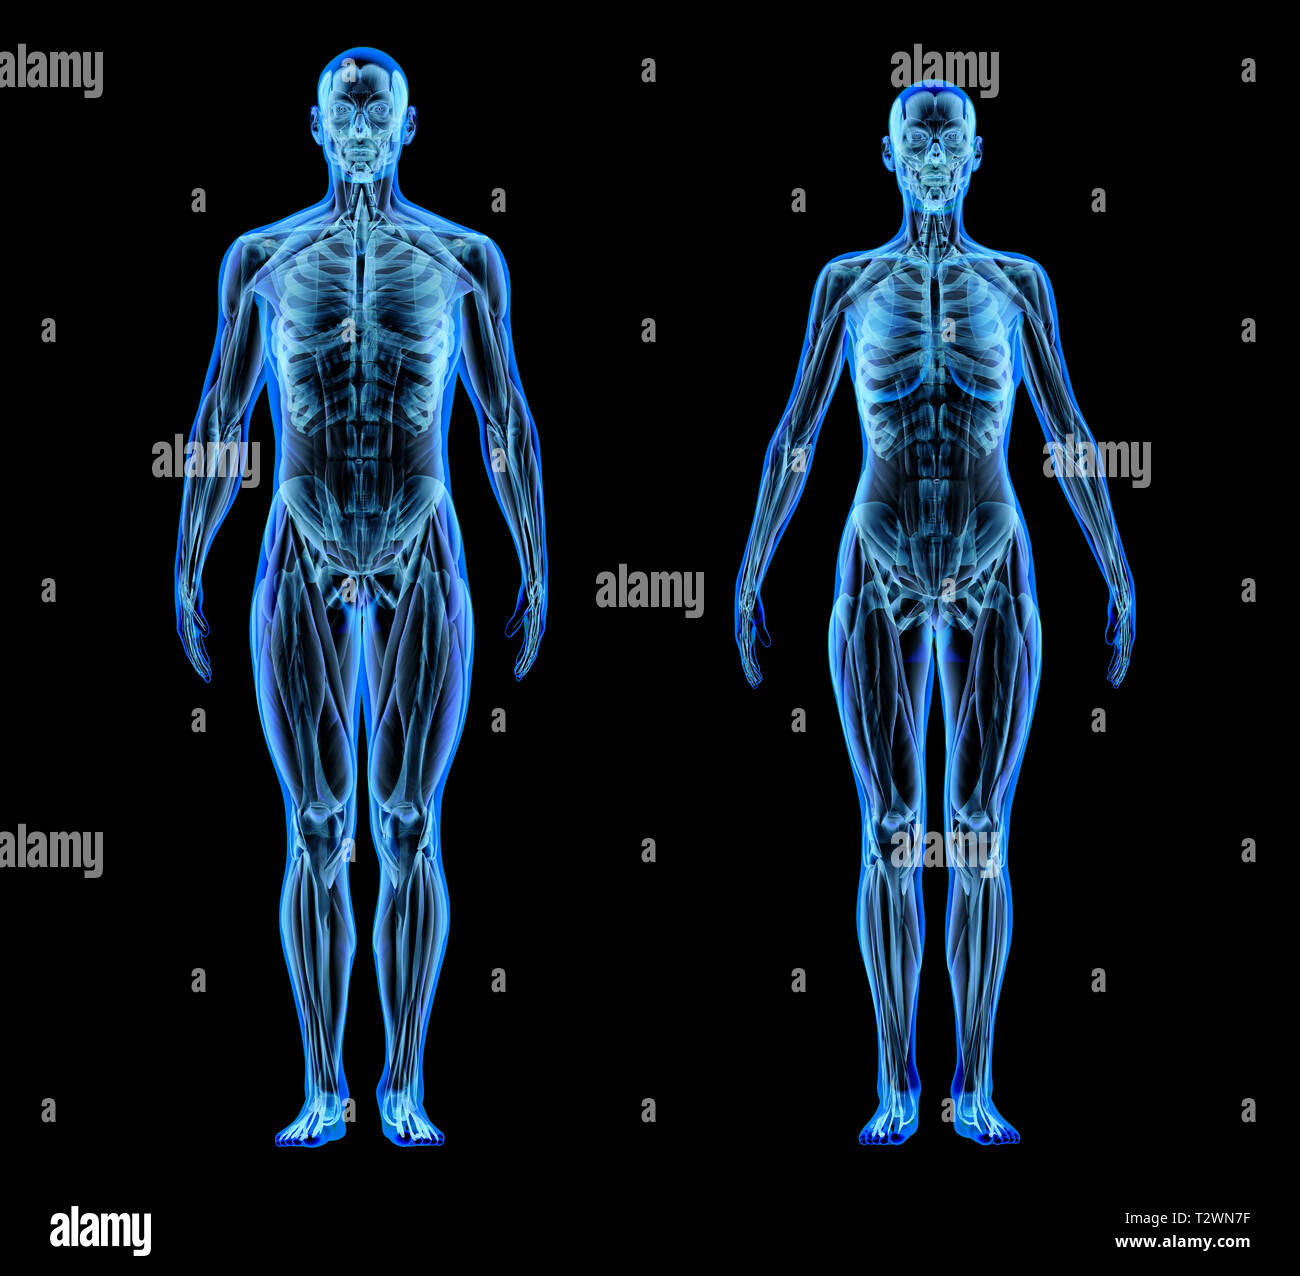 Mann und Frau Muskel- und Skeletterkrankungen. X-Ray Effect auf schwarzem Hintergrund. Stockfoto